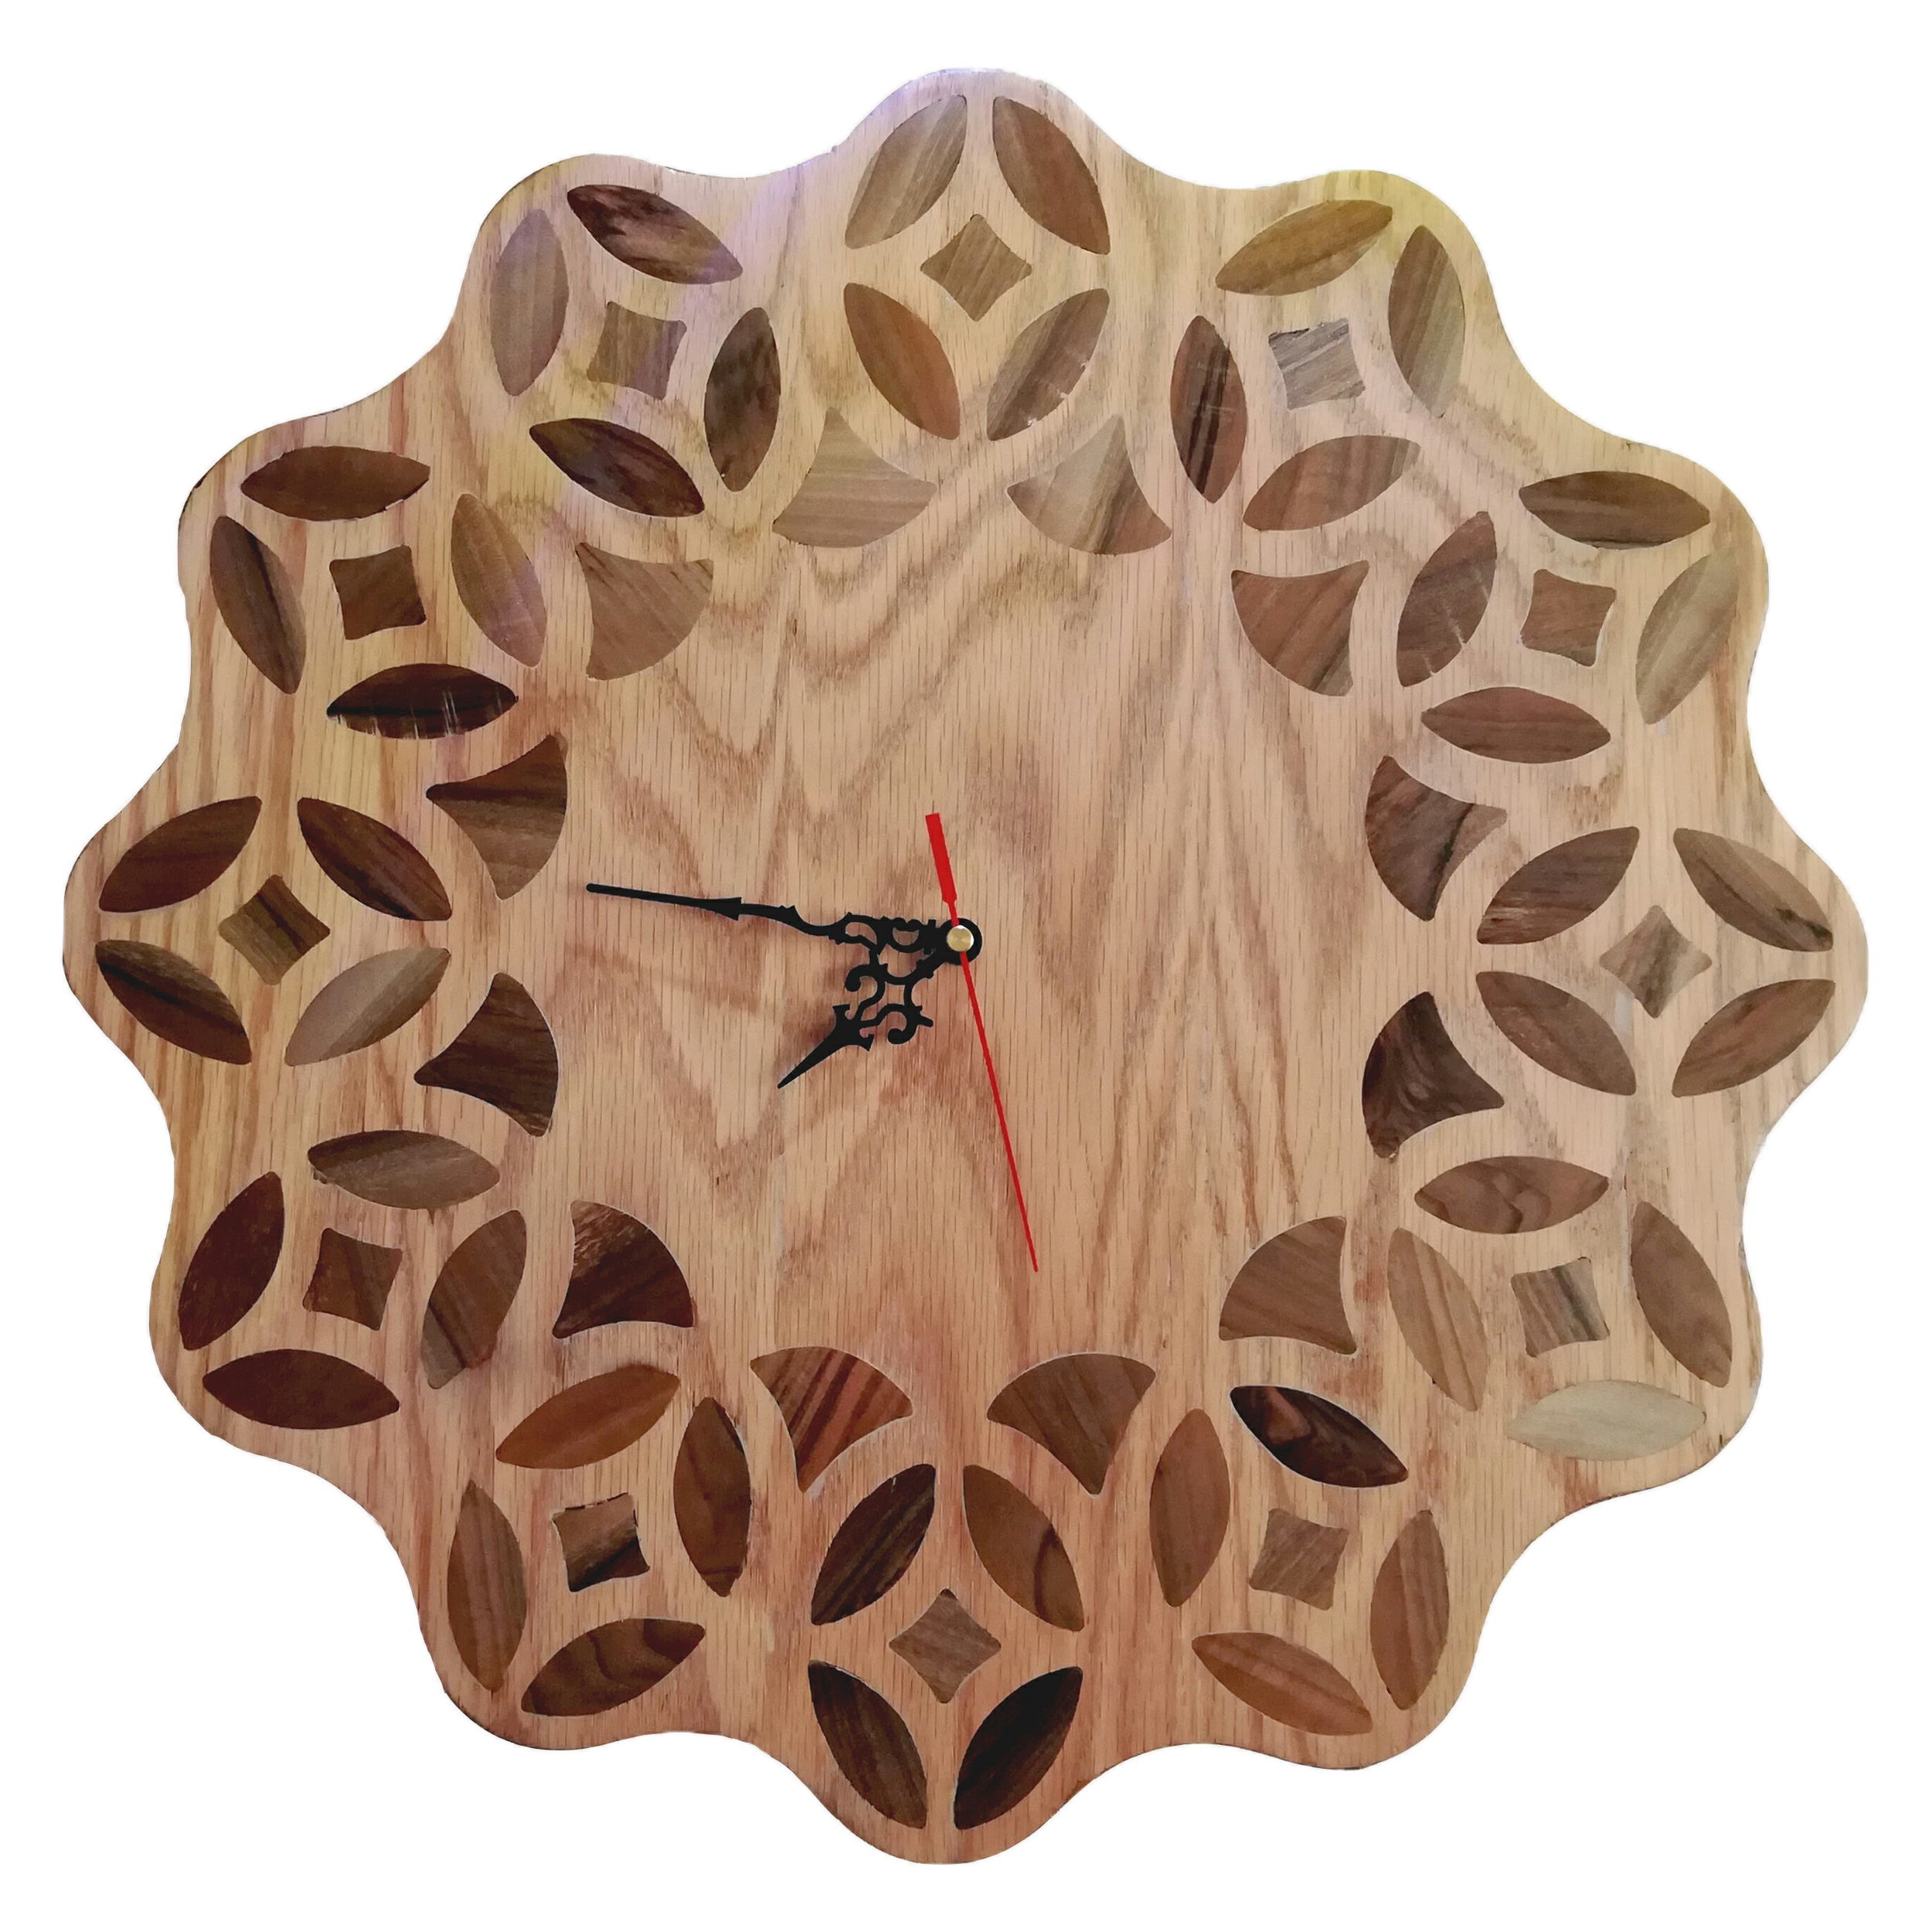 ساعت چوبی مدل خورشید